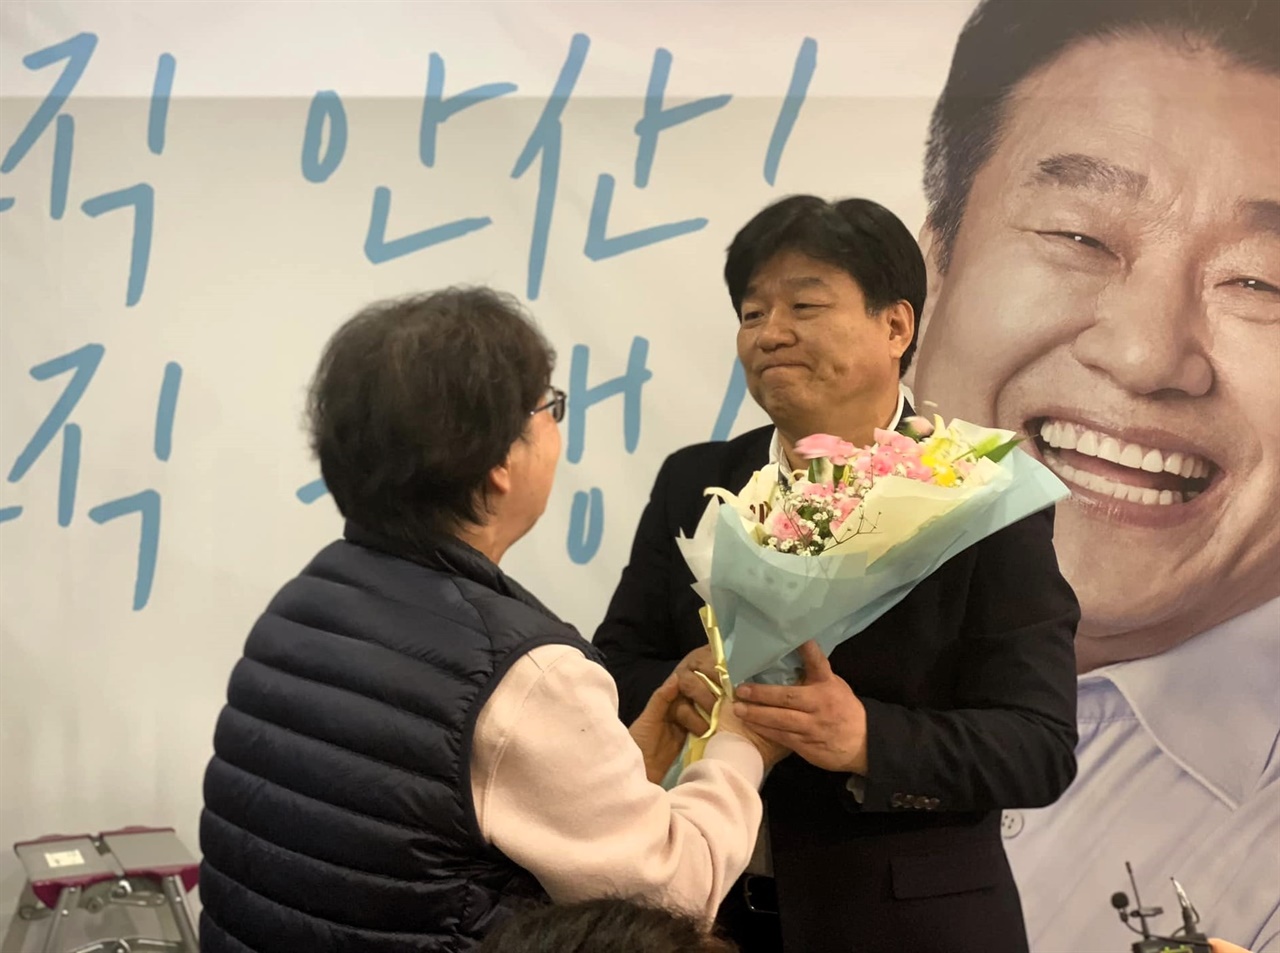 당선 축하 꽃다발을 받고 있는 민주당 양문석 당선자